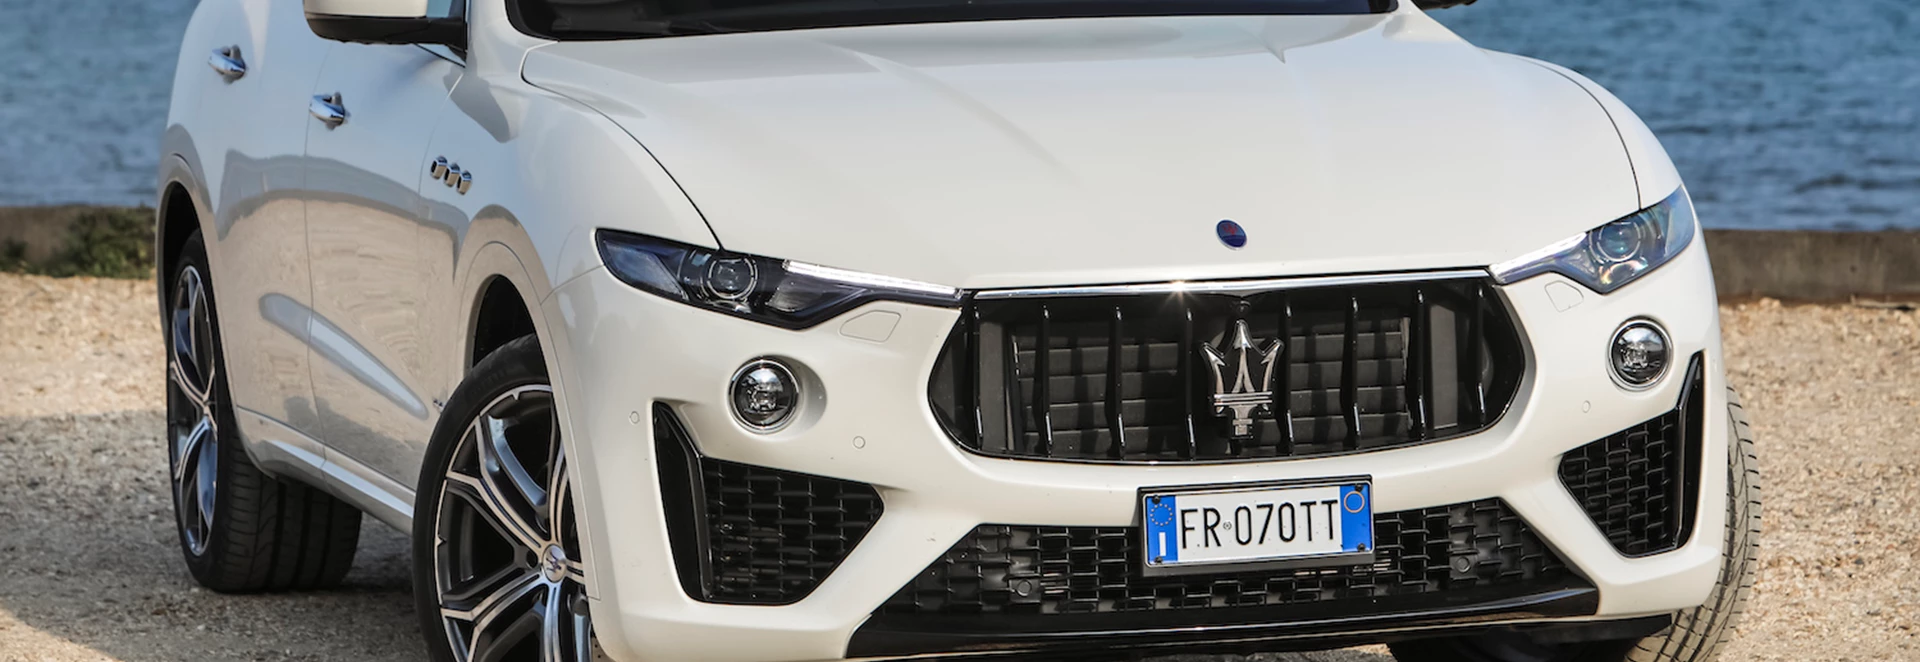 Maserati Levante 2019 review 